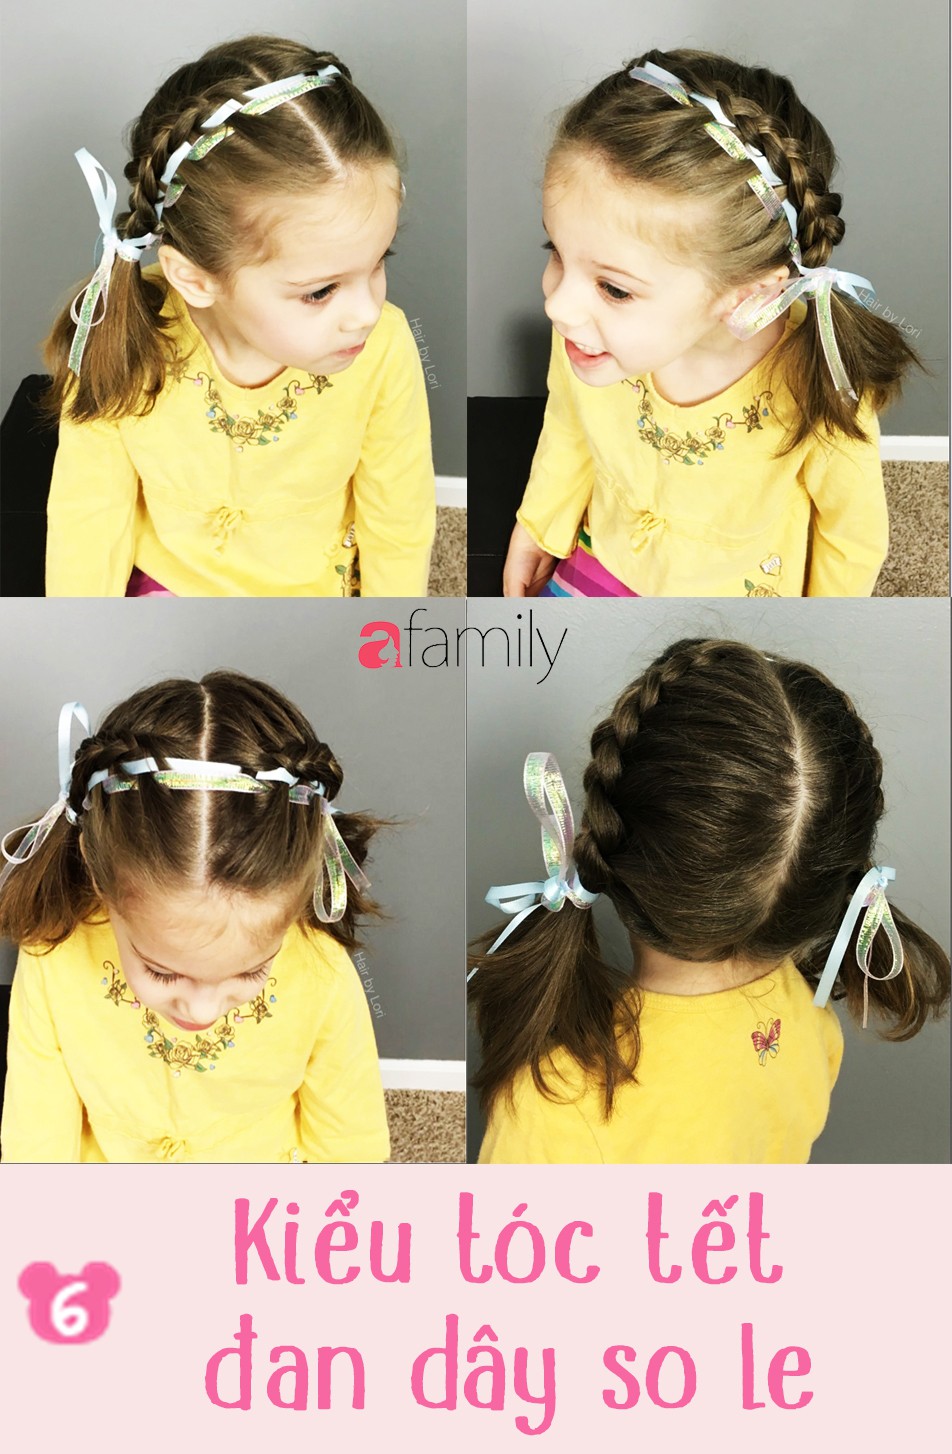 Hướng dẫn 50 kiểu tết tóc cho bé gái đi chơi đi học  YouTube